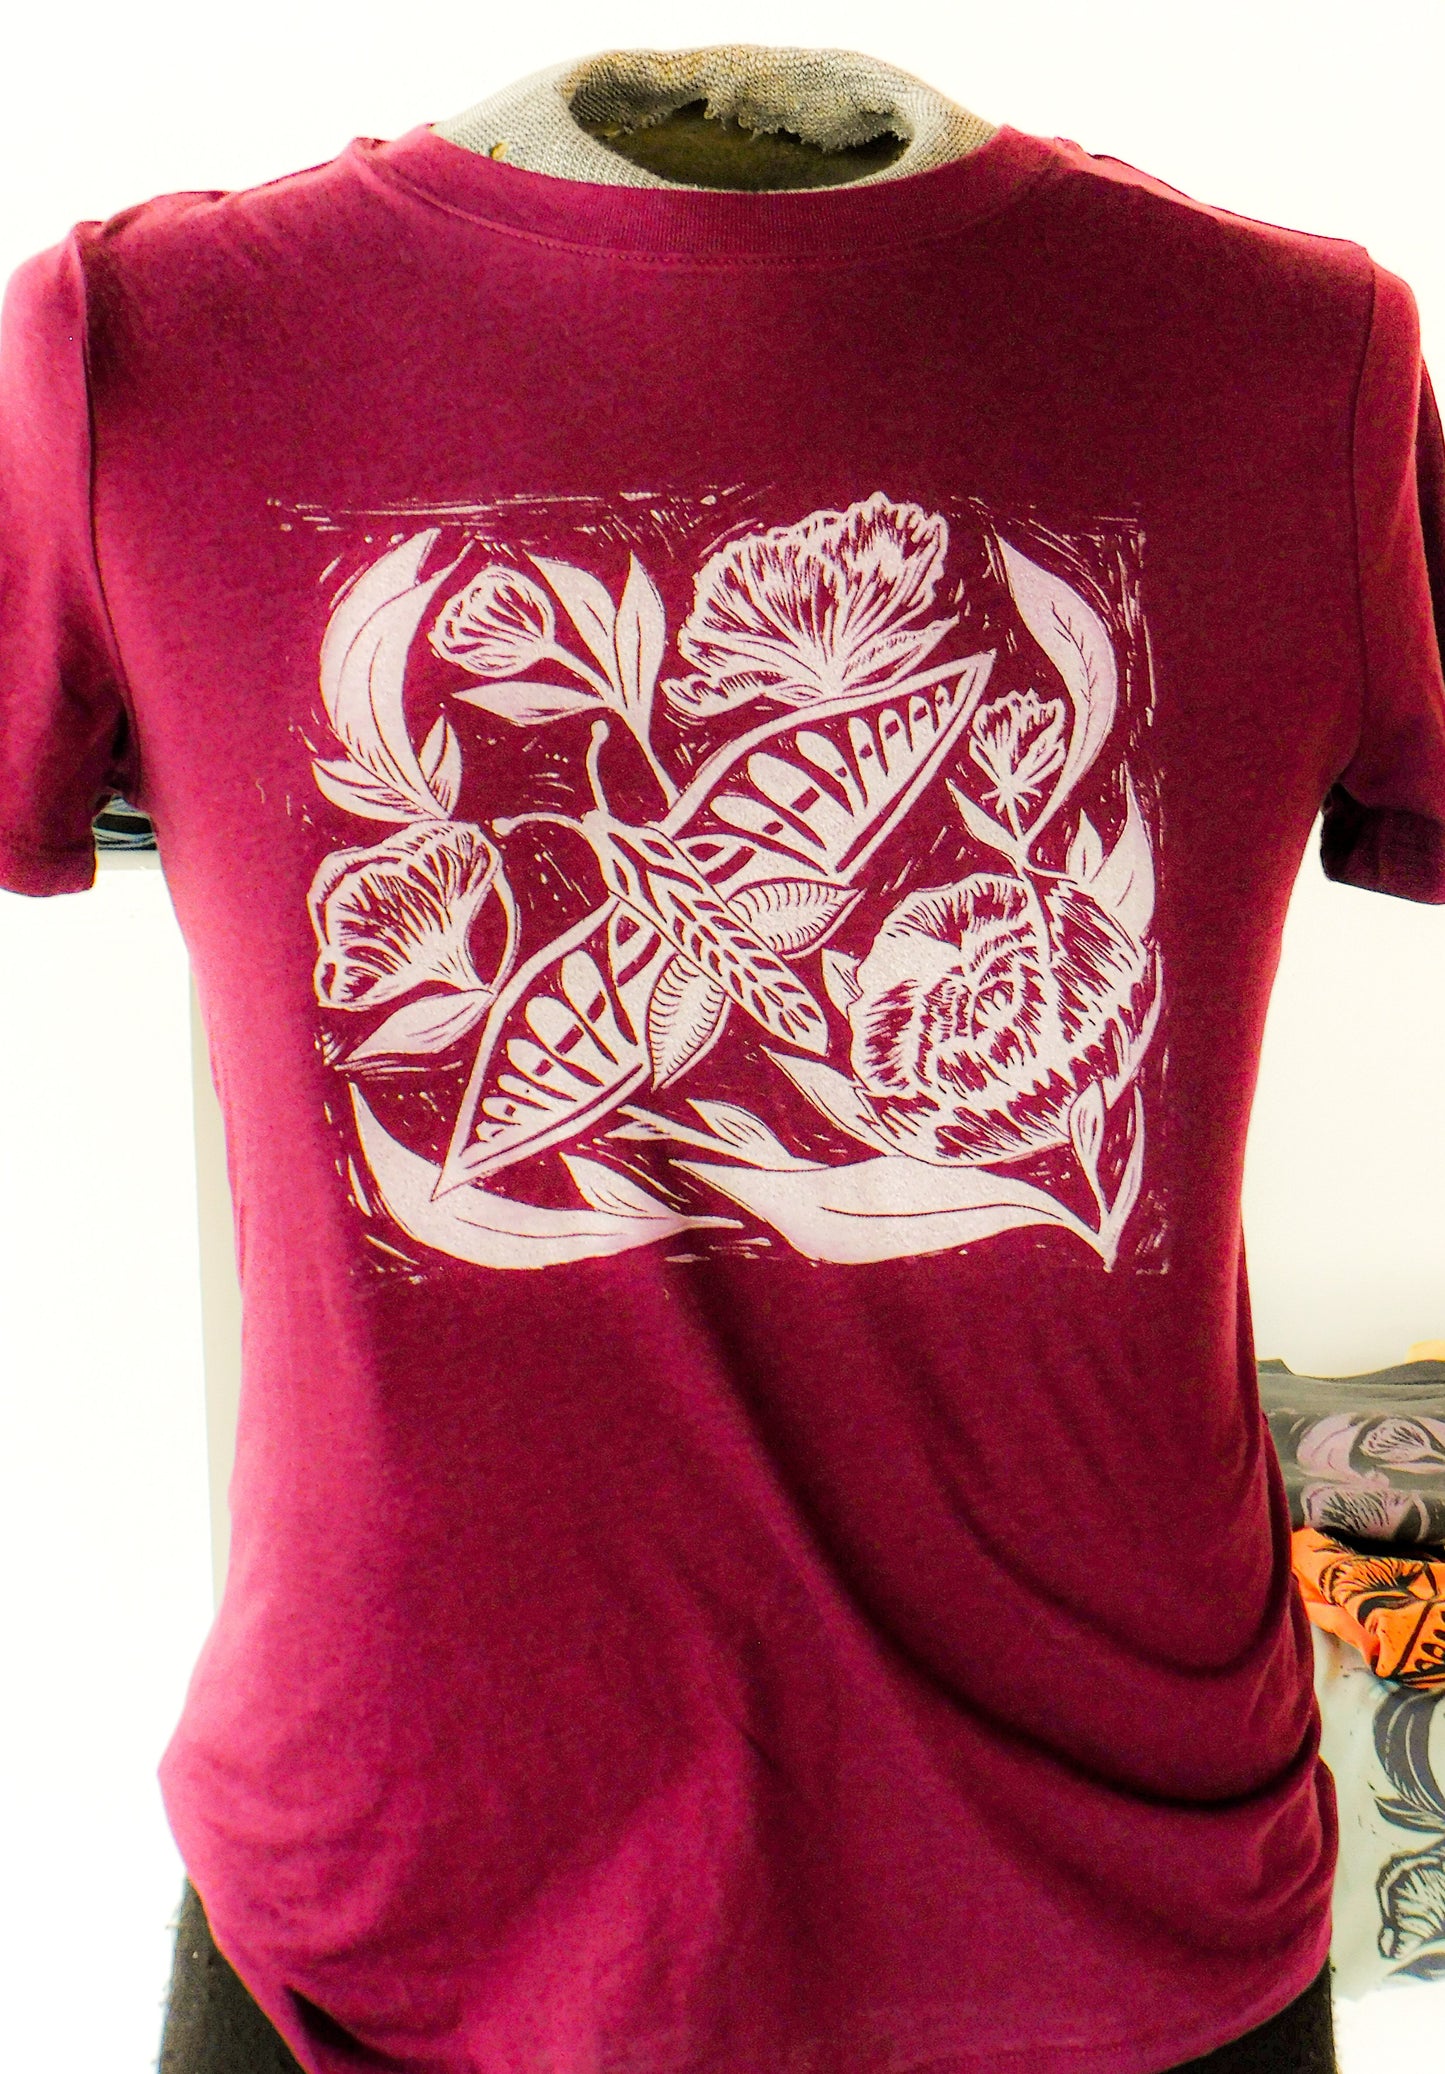 Jill McFarlane - "Moth" Block Print T-Shirt